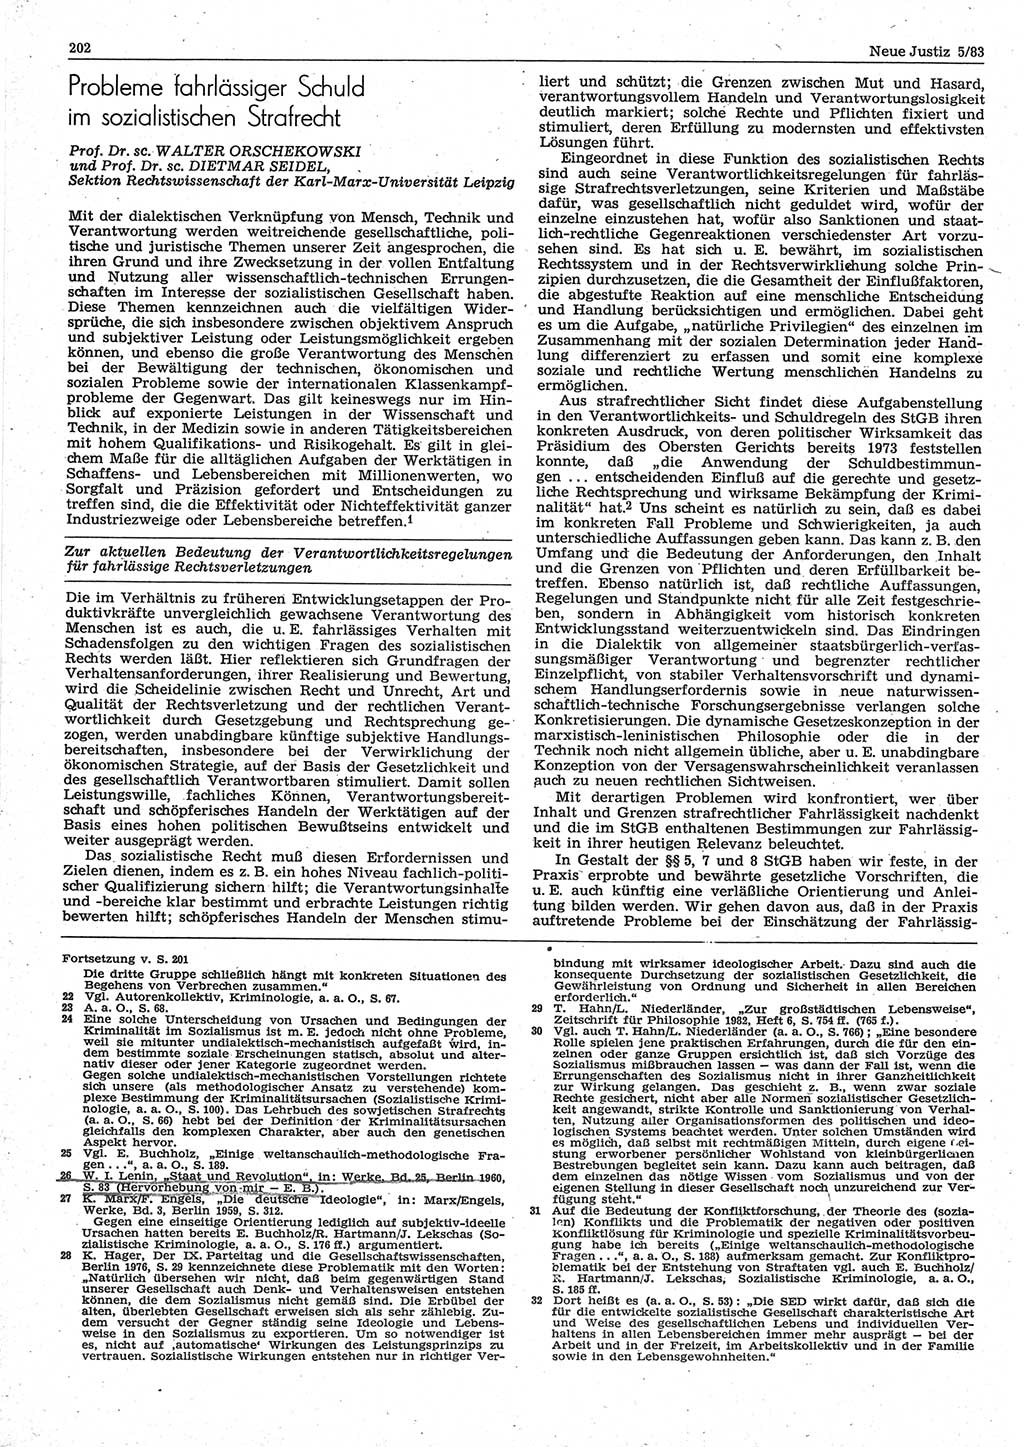 Neue Justiz (NJ), Zeitschrift für sozialistisches Recht und Gesetzlichkeit [Deutsche Demokratische Republik (DDR)], 37. Jahrgang 1983, Seite 202 (NJ DDR 1983, S. 202)